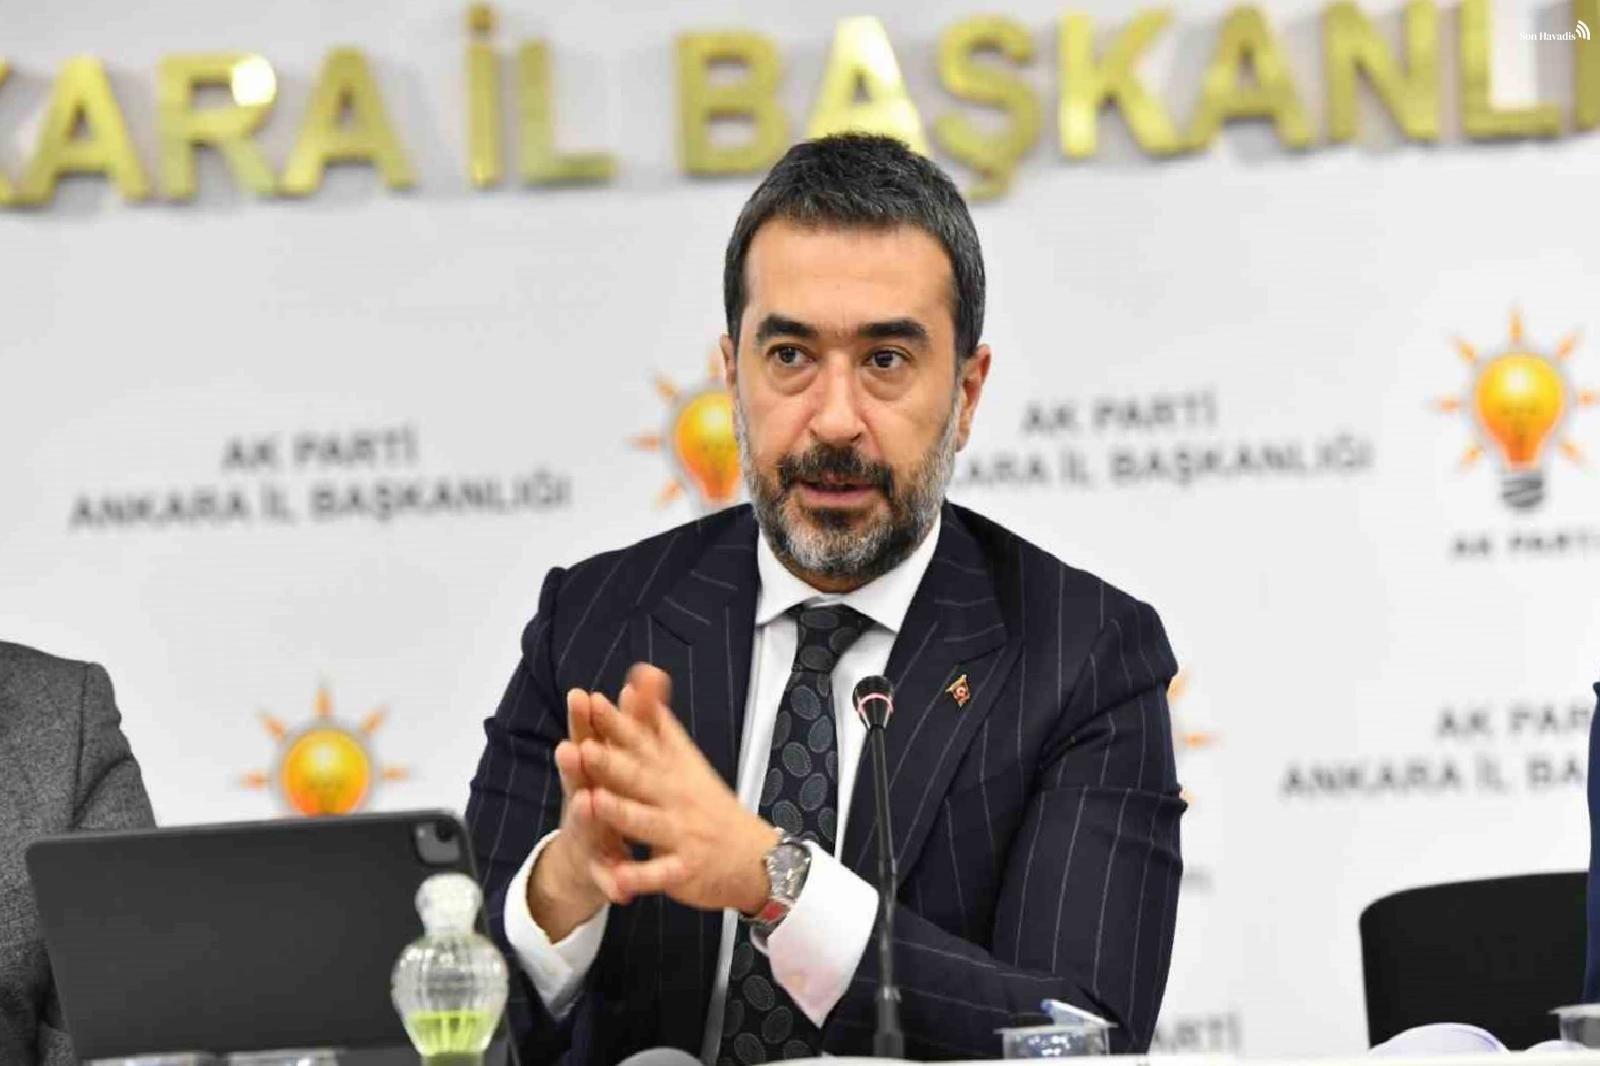 AK Parti Ankara İl Başkanı Özcan'ın “Oy kulanın” dinlemesine bakmaktan büyük destek